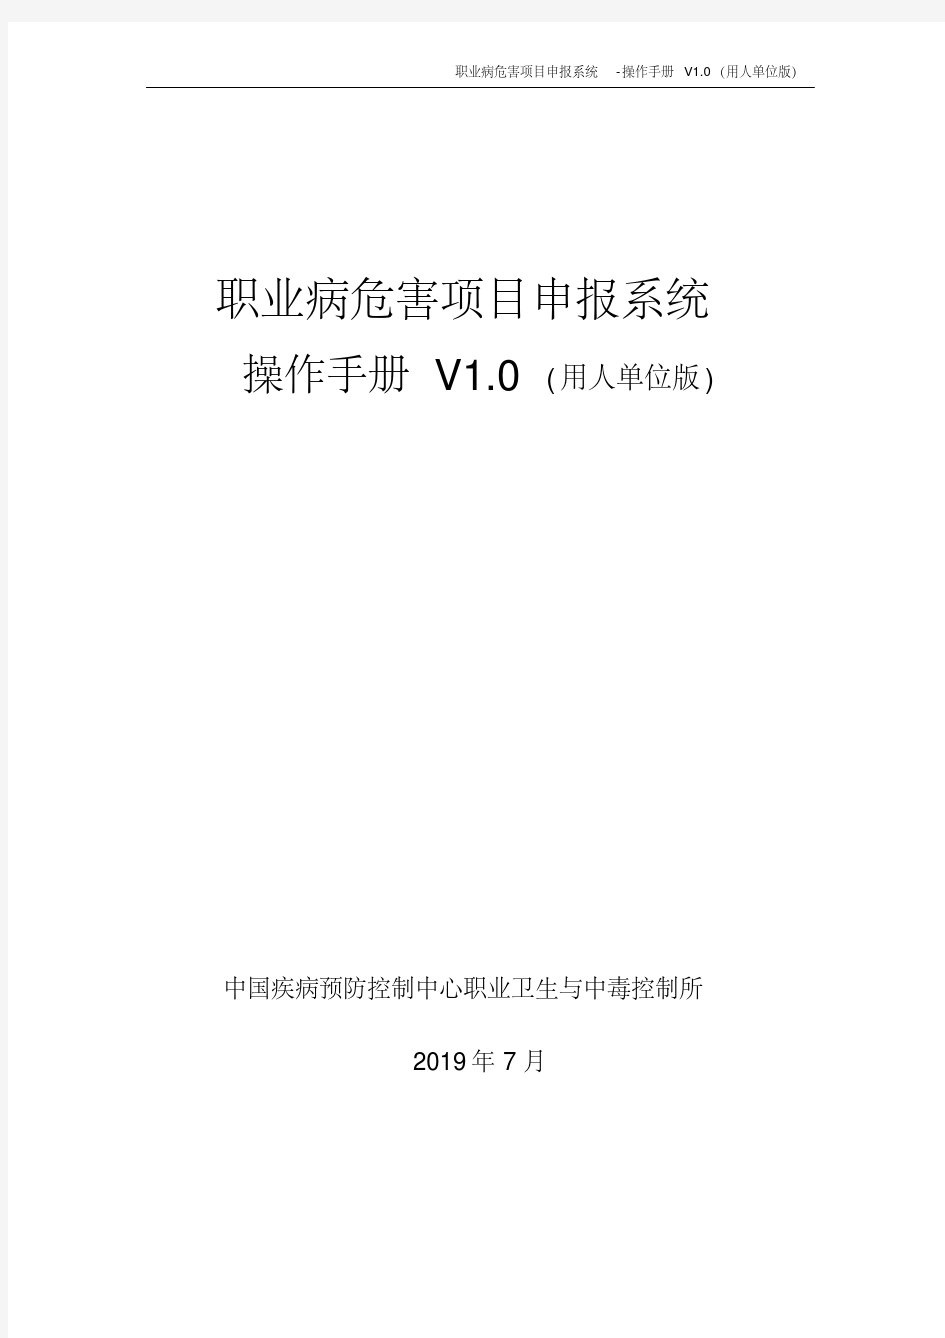 2019职业病危害项目申报系统-操作手册v1.0(用人单位版).pdf